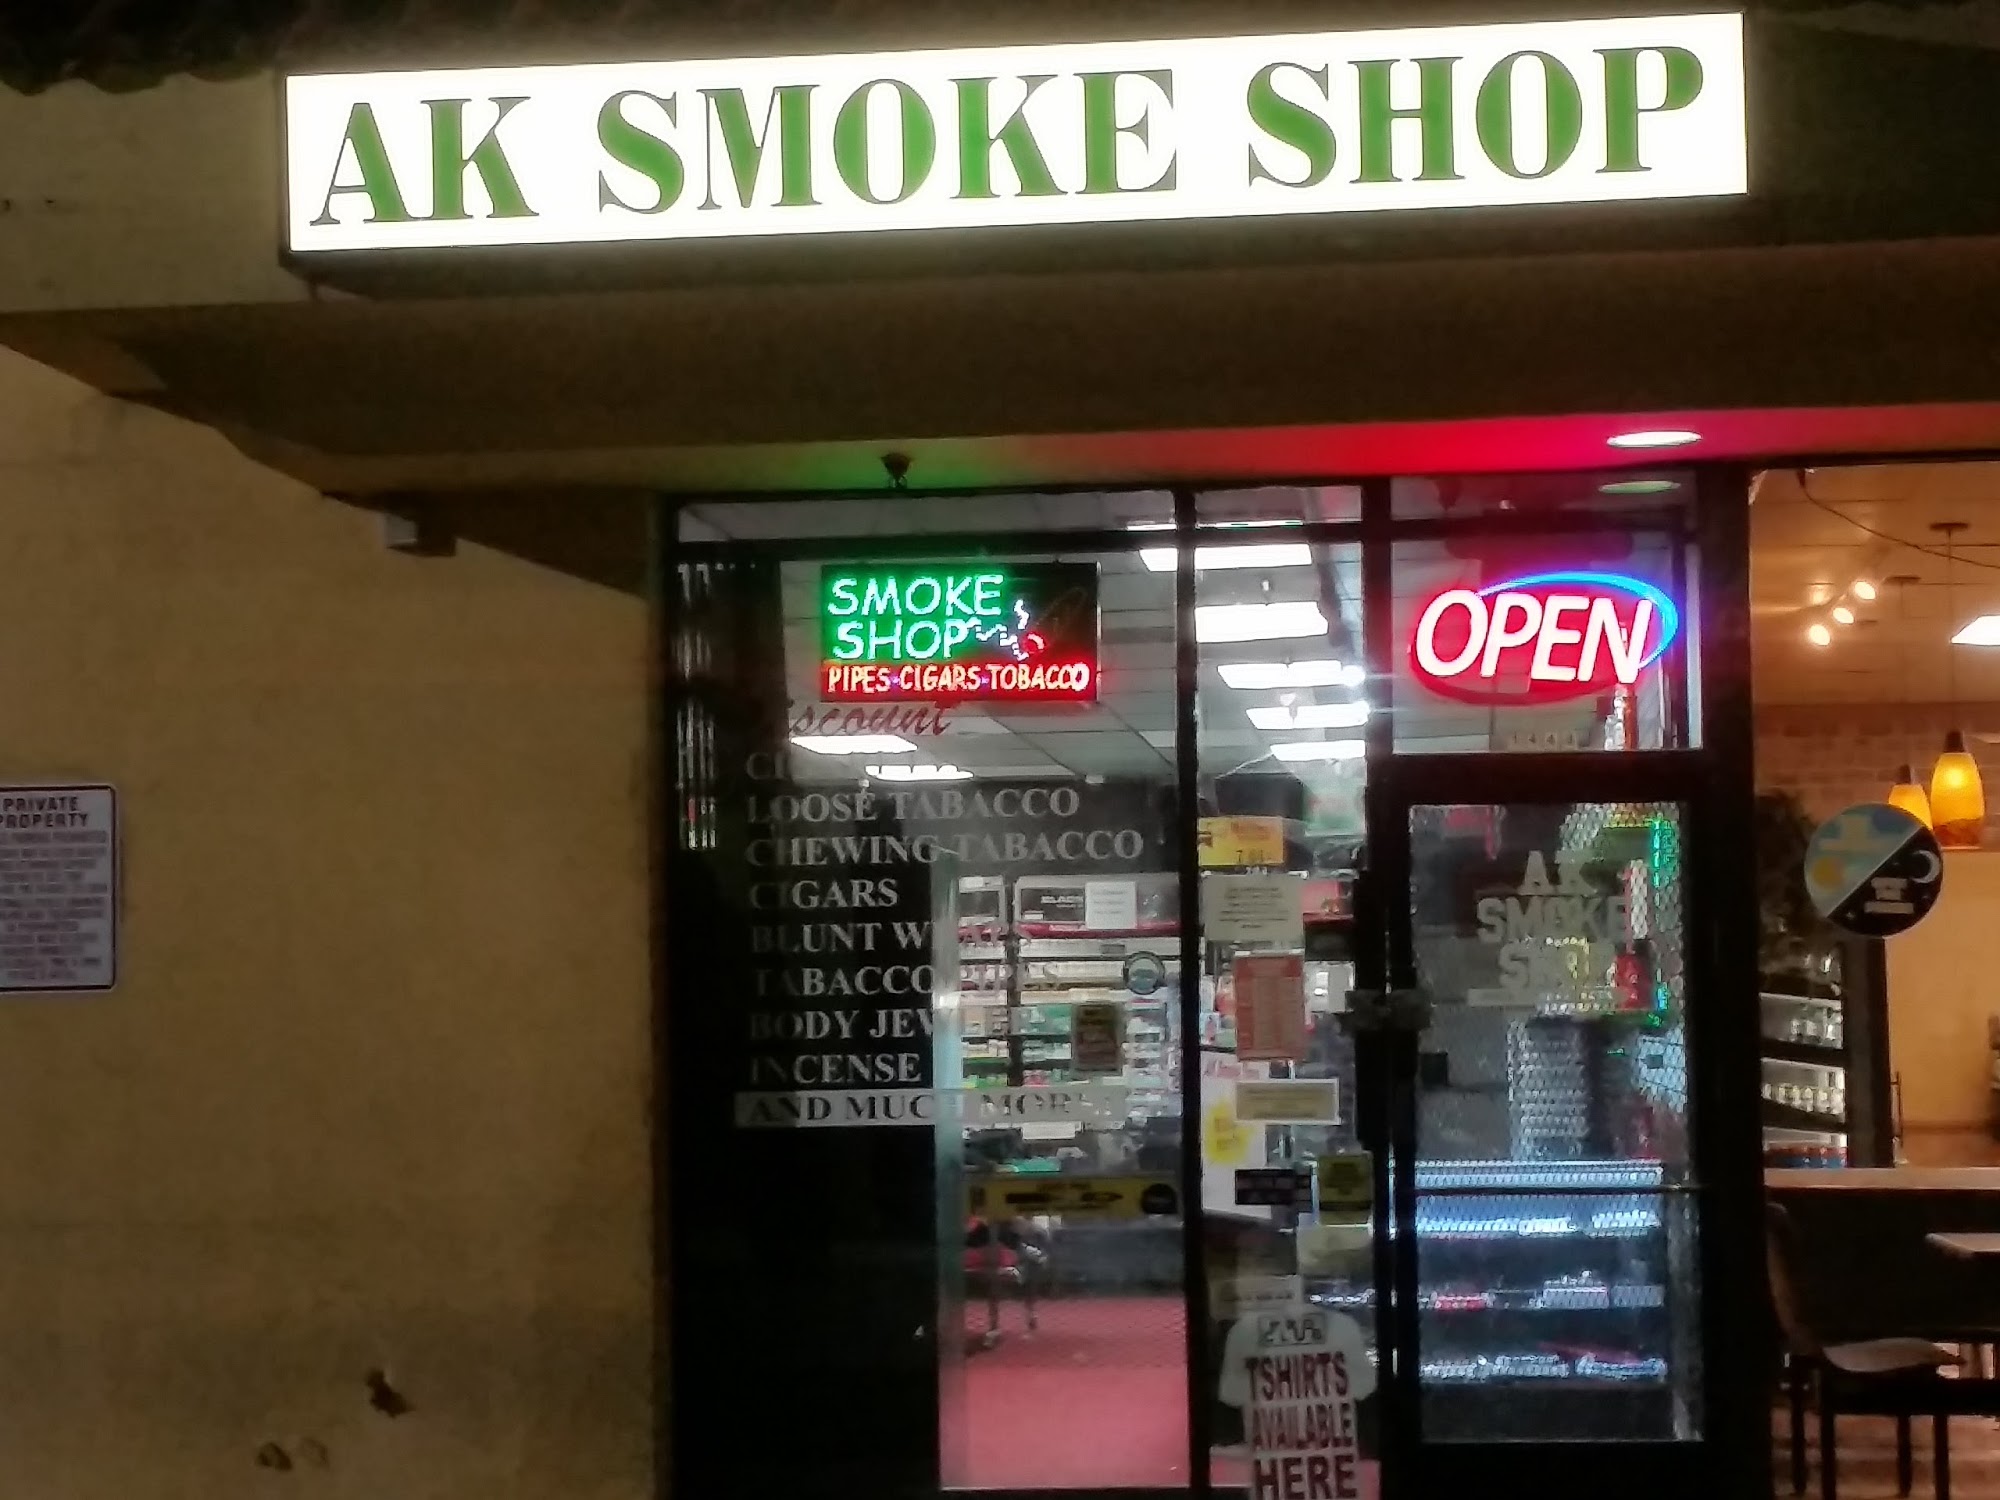 AK SMOKE SHOP